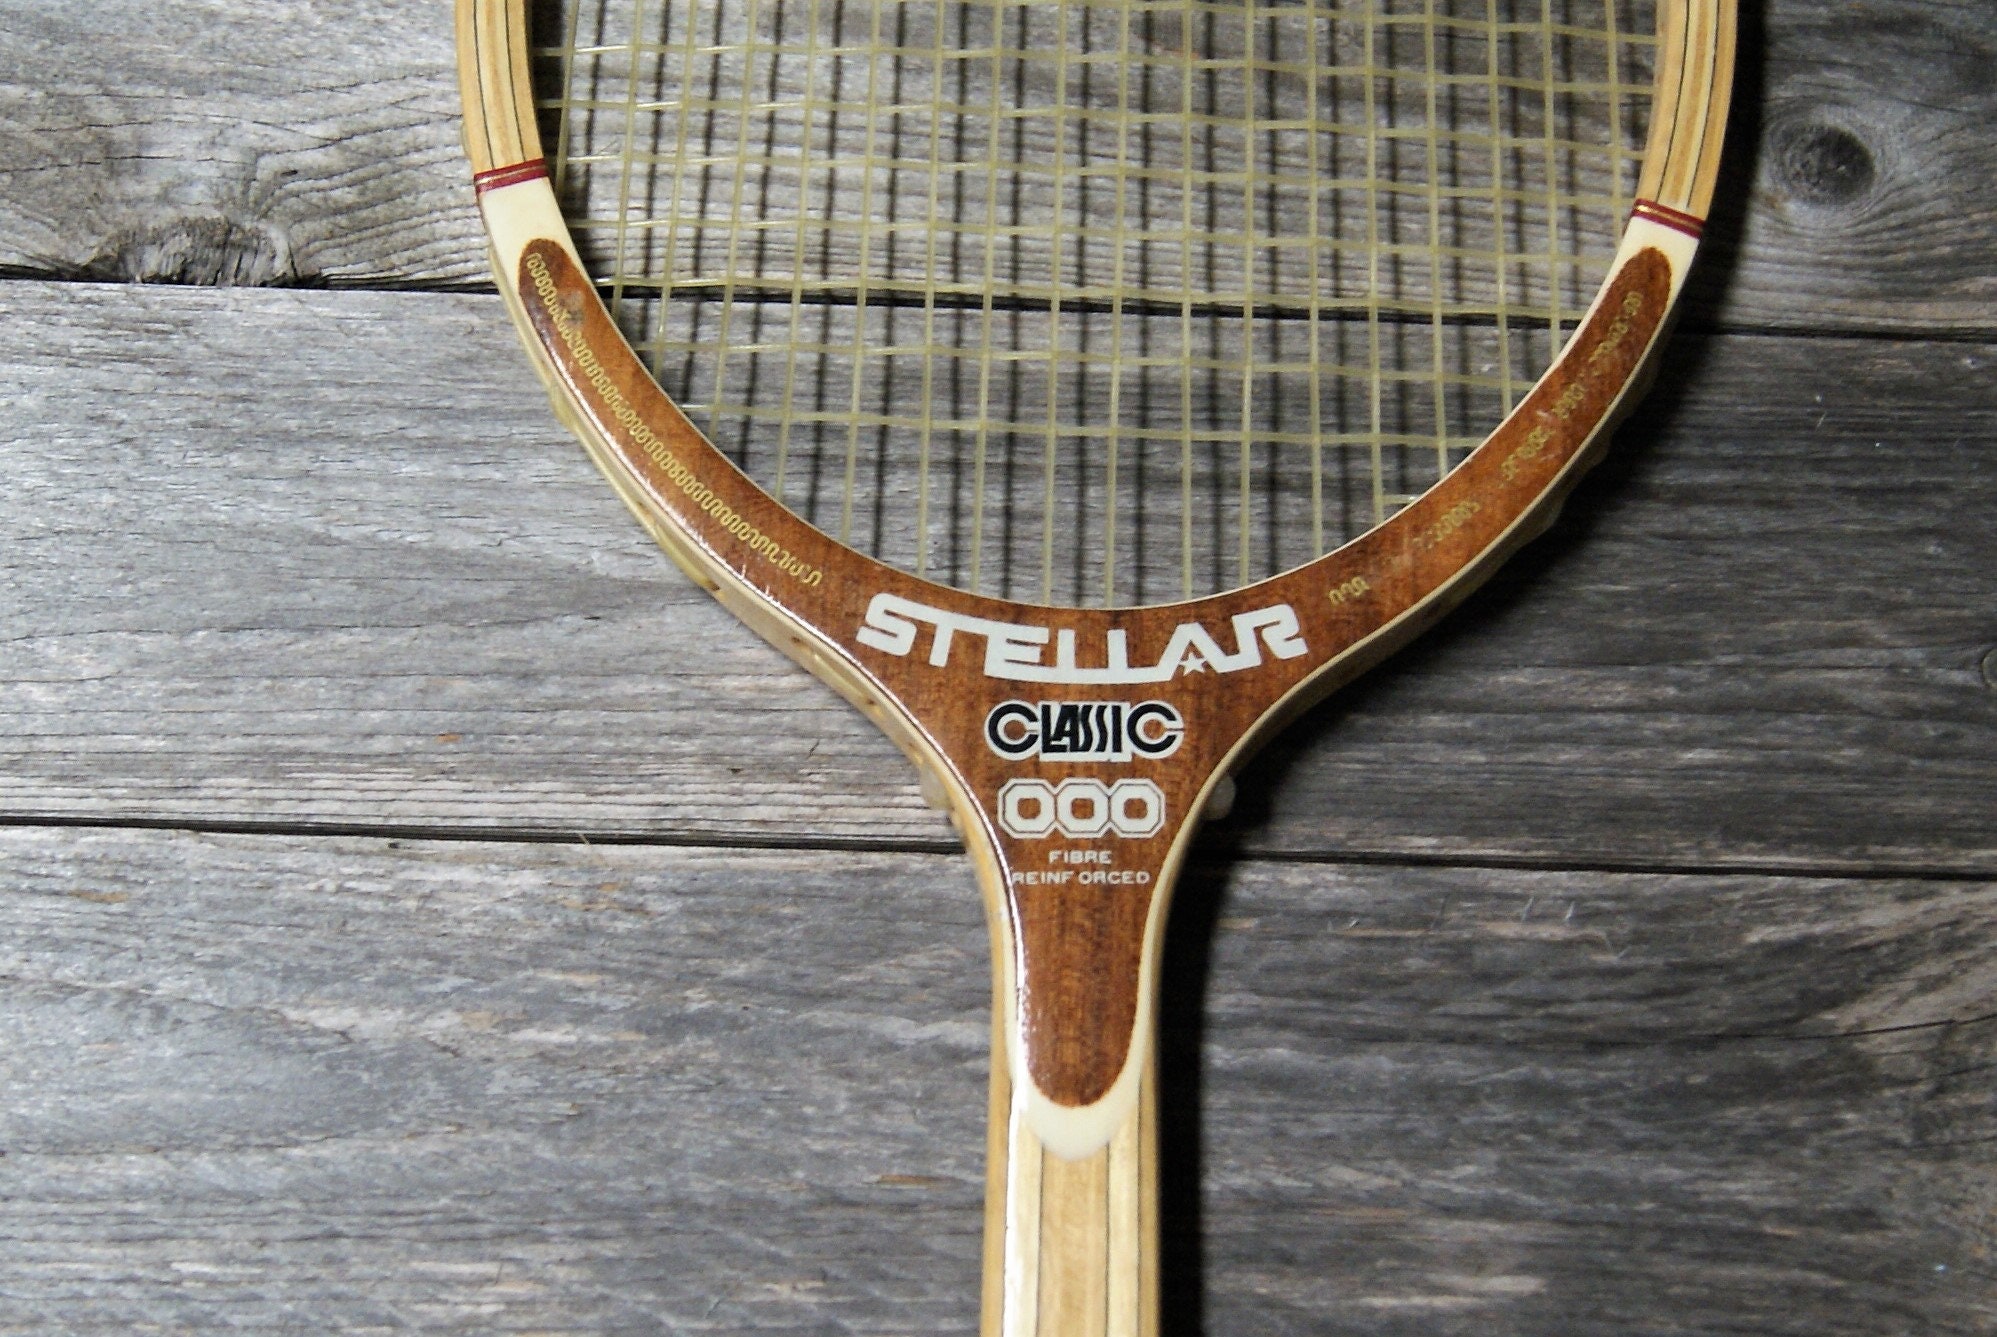 Silvester Stylish Surgrip Tennis, Squash, Padel, Badminton Lot de 3 -   France